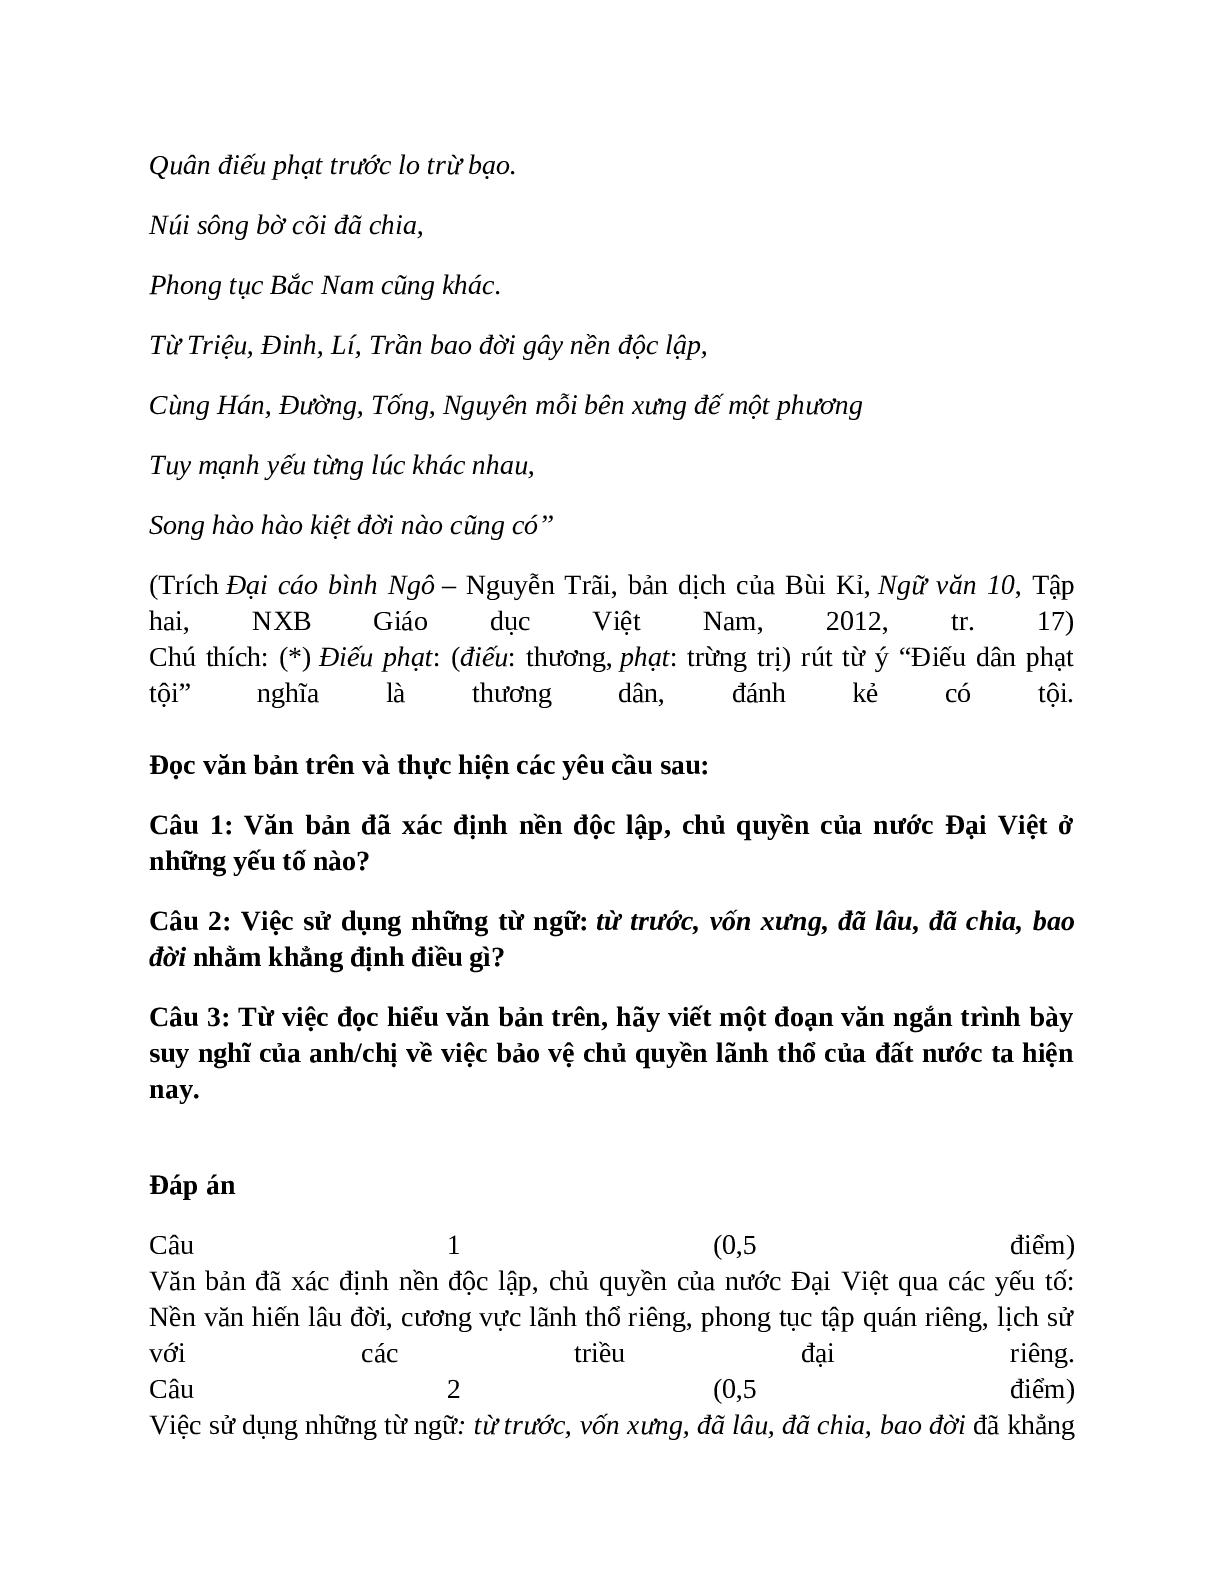 Sơ đồ tư duy bài Bình Ngô đại cáo dễ nhớ, ngắn nhất - Ngữ văn lớp 10 (trang 10)